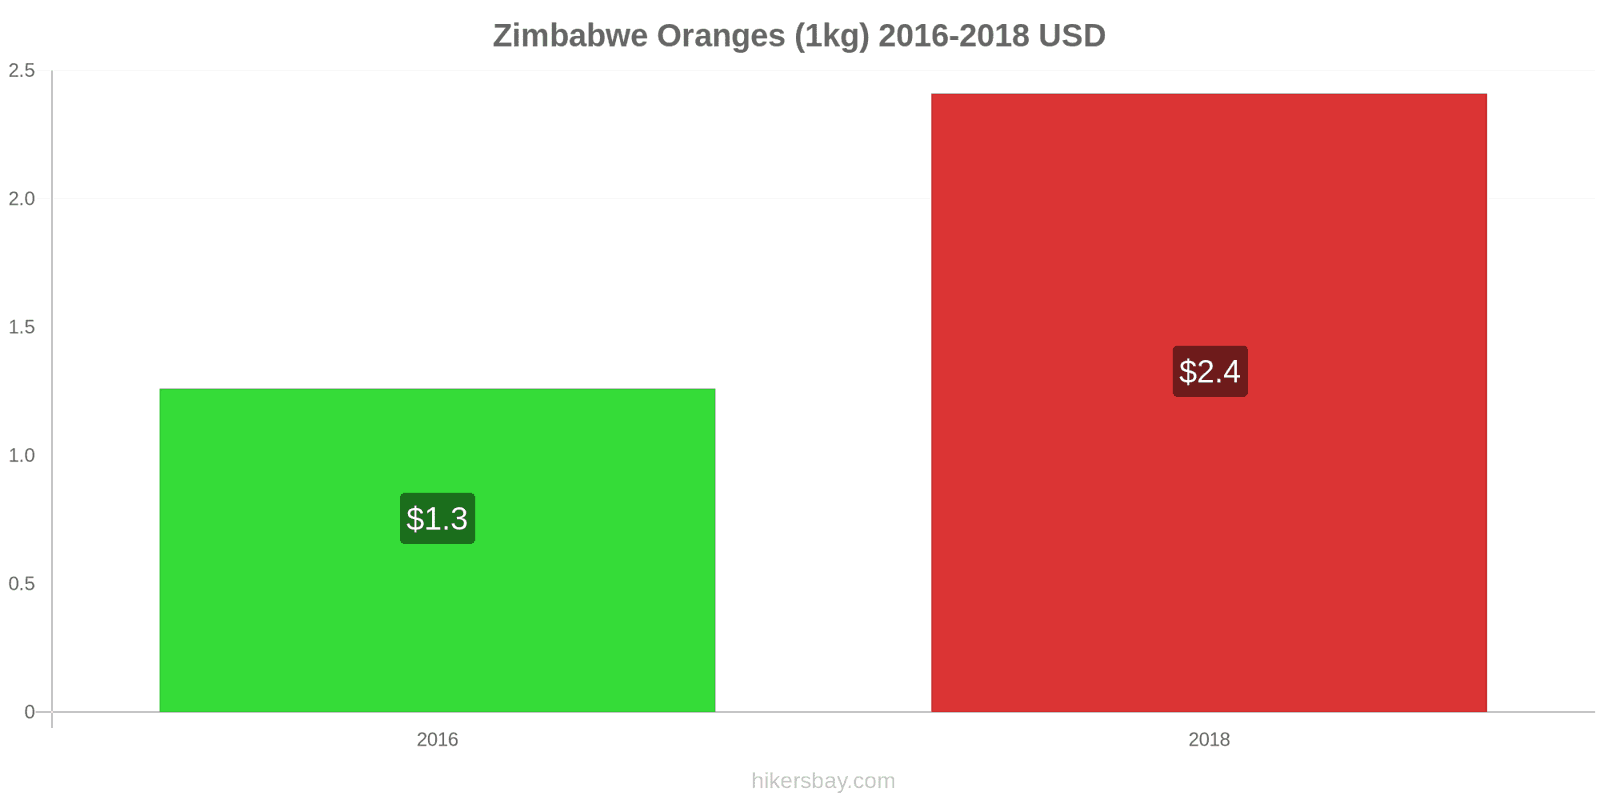 Zimbabwe price changes Oranges (1kg) hikersbay.com